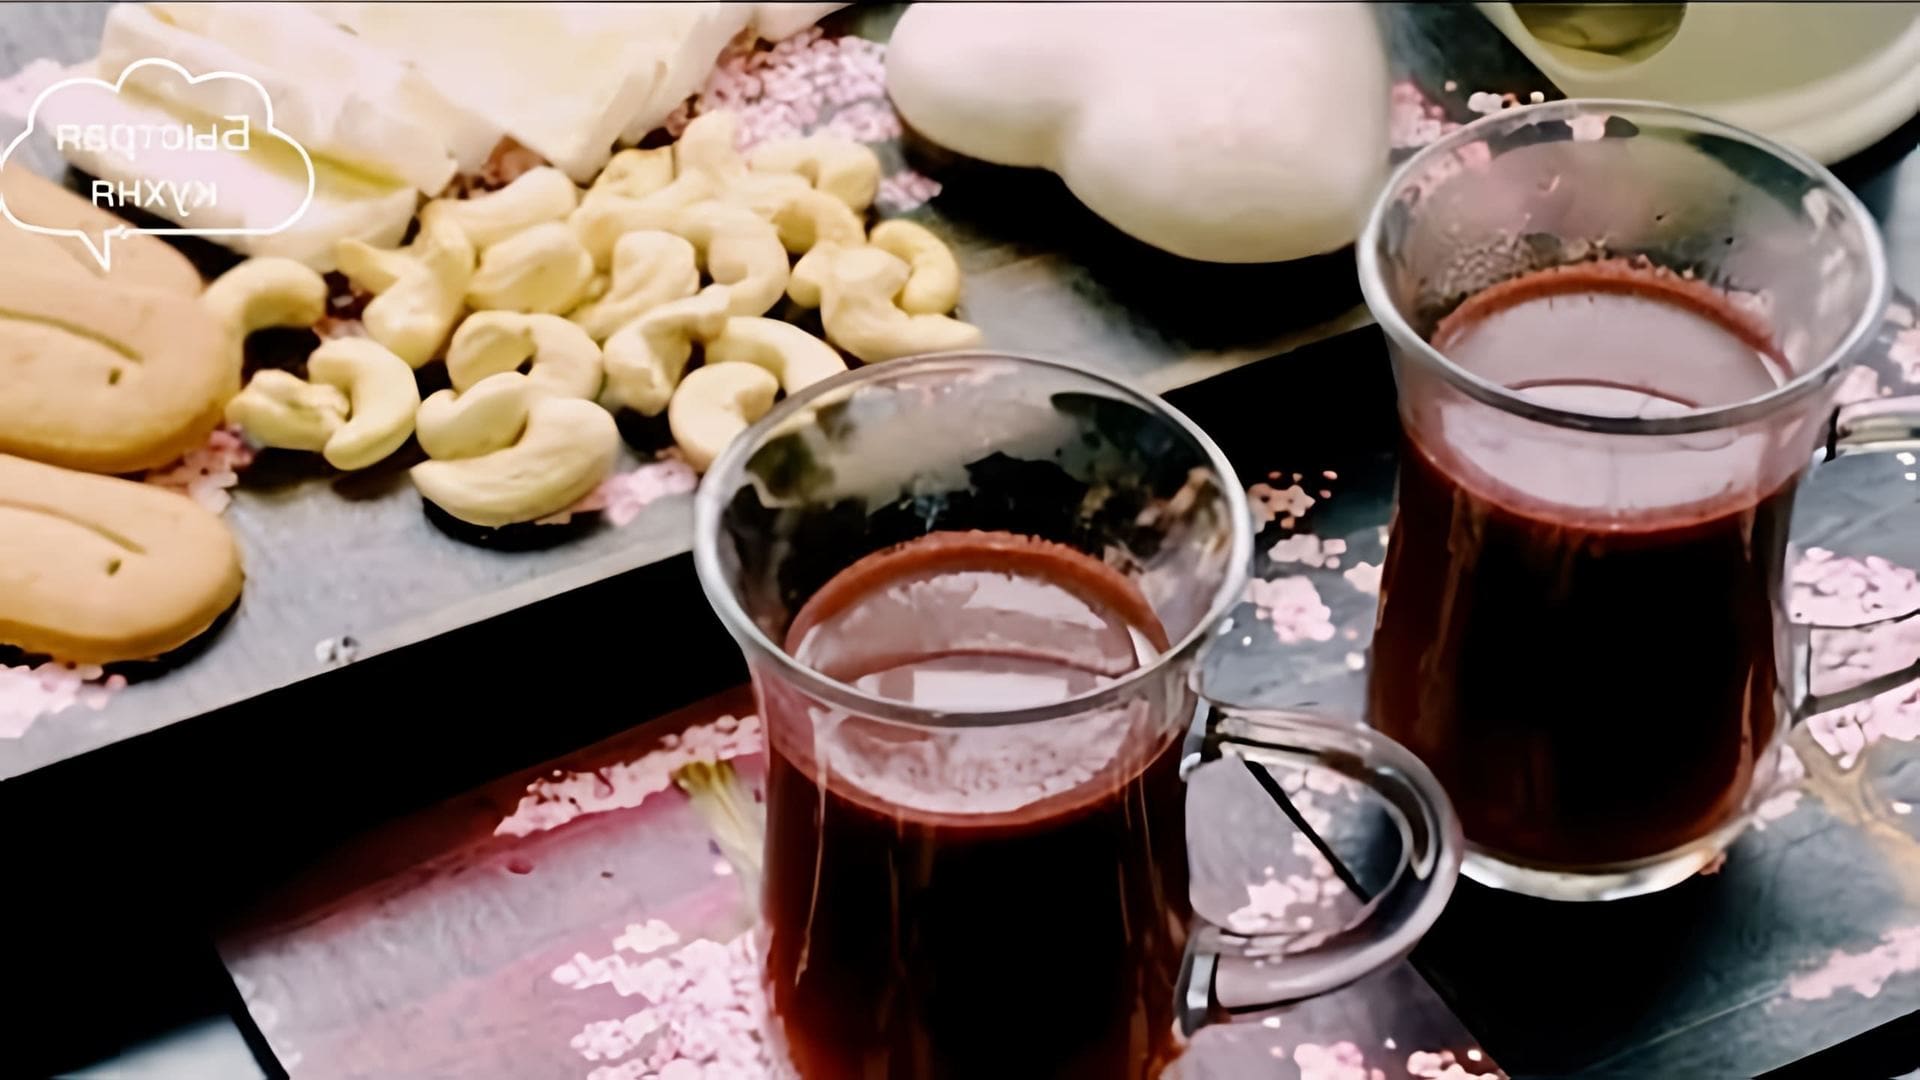 В этом видео демонстрируется рецепт приготовления двух напитков: глинтвейна и безалкогольного напитка